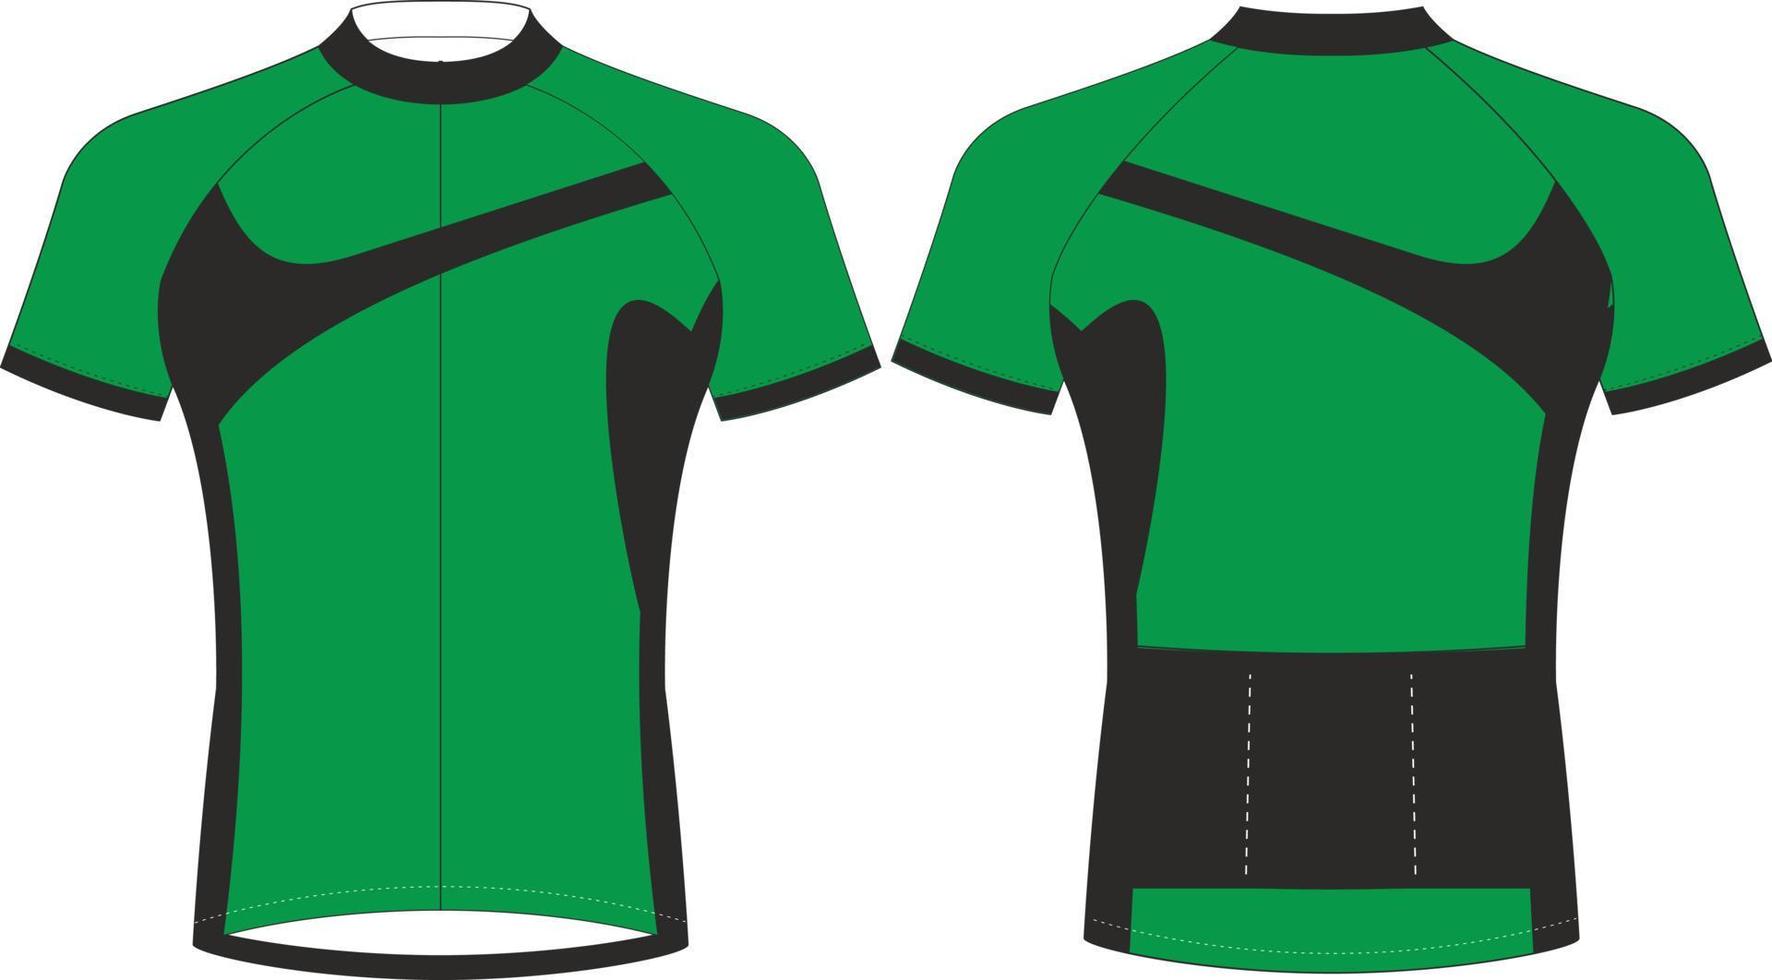 Ciclismo maglie, corto manica gli sport modello modello, Ciclismo uniforme cerniera giacca mockup, pieno vettore eps File